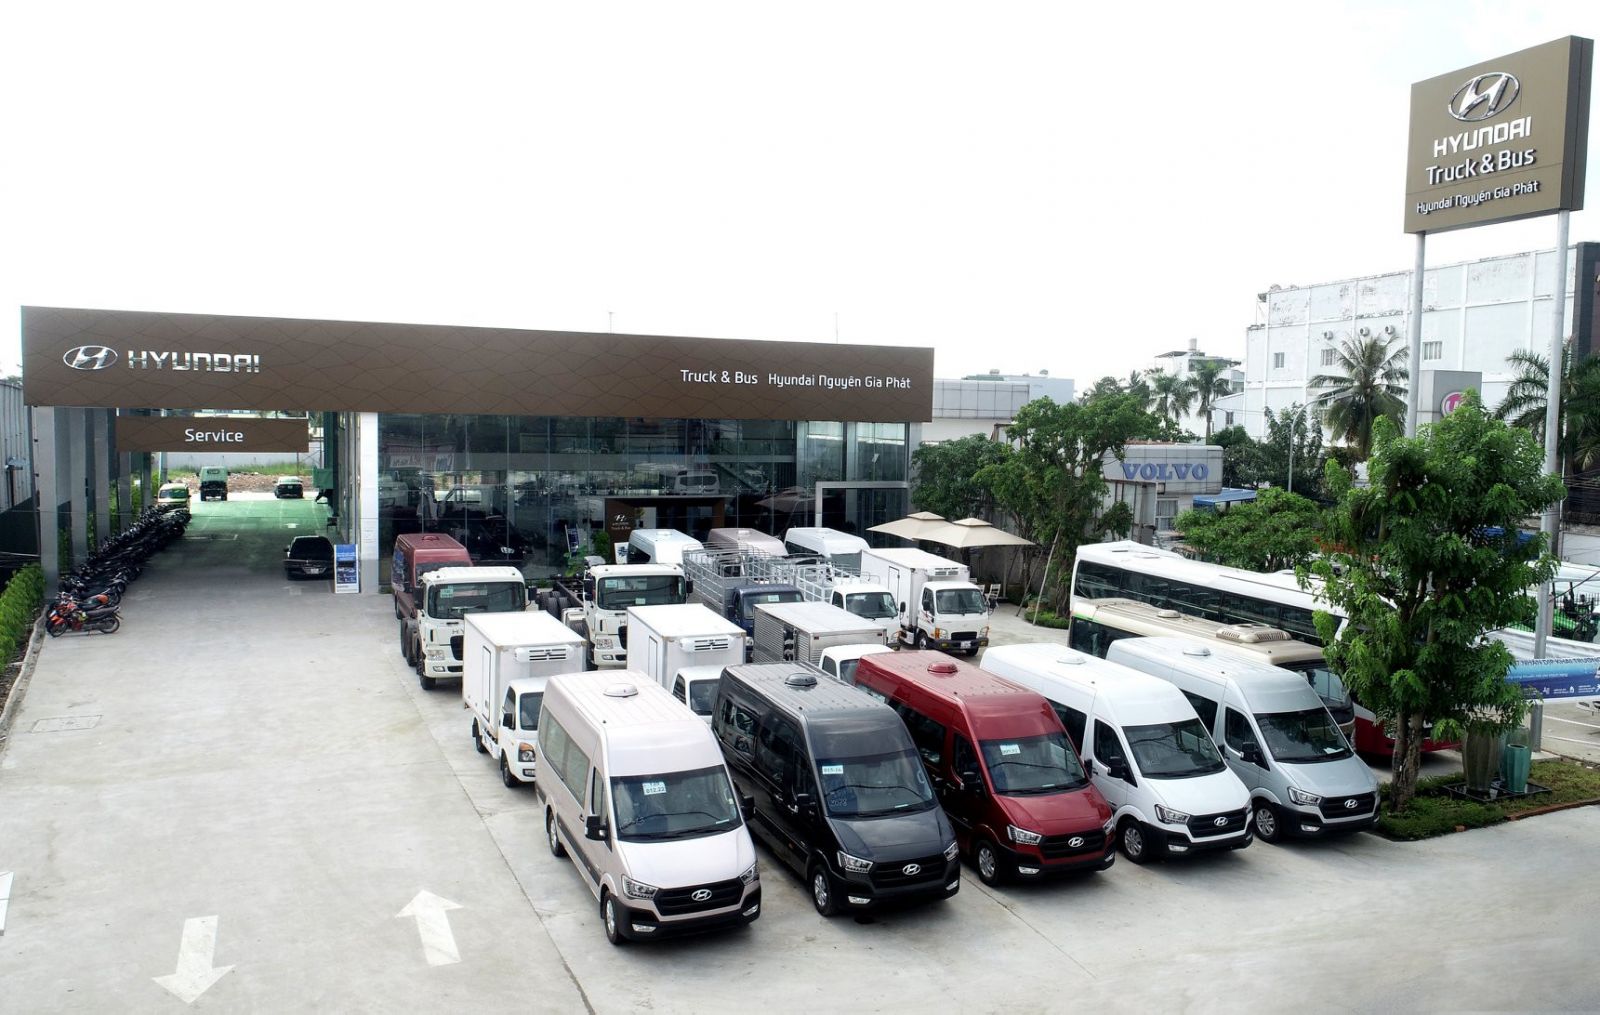 Hyundai Nguyên Gia Phát phân phối xe khách